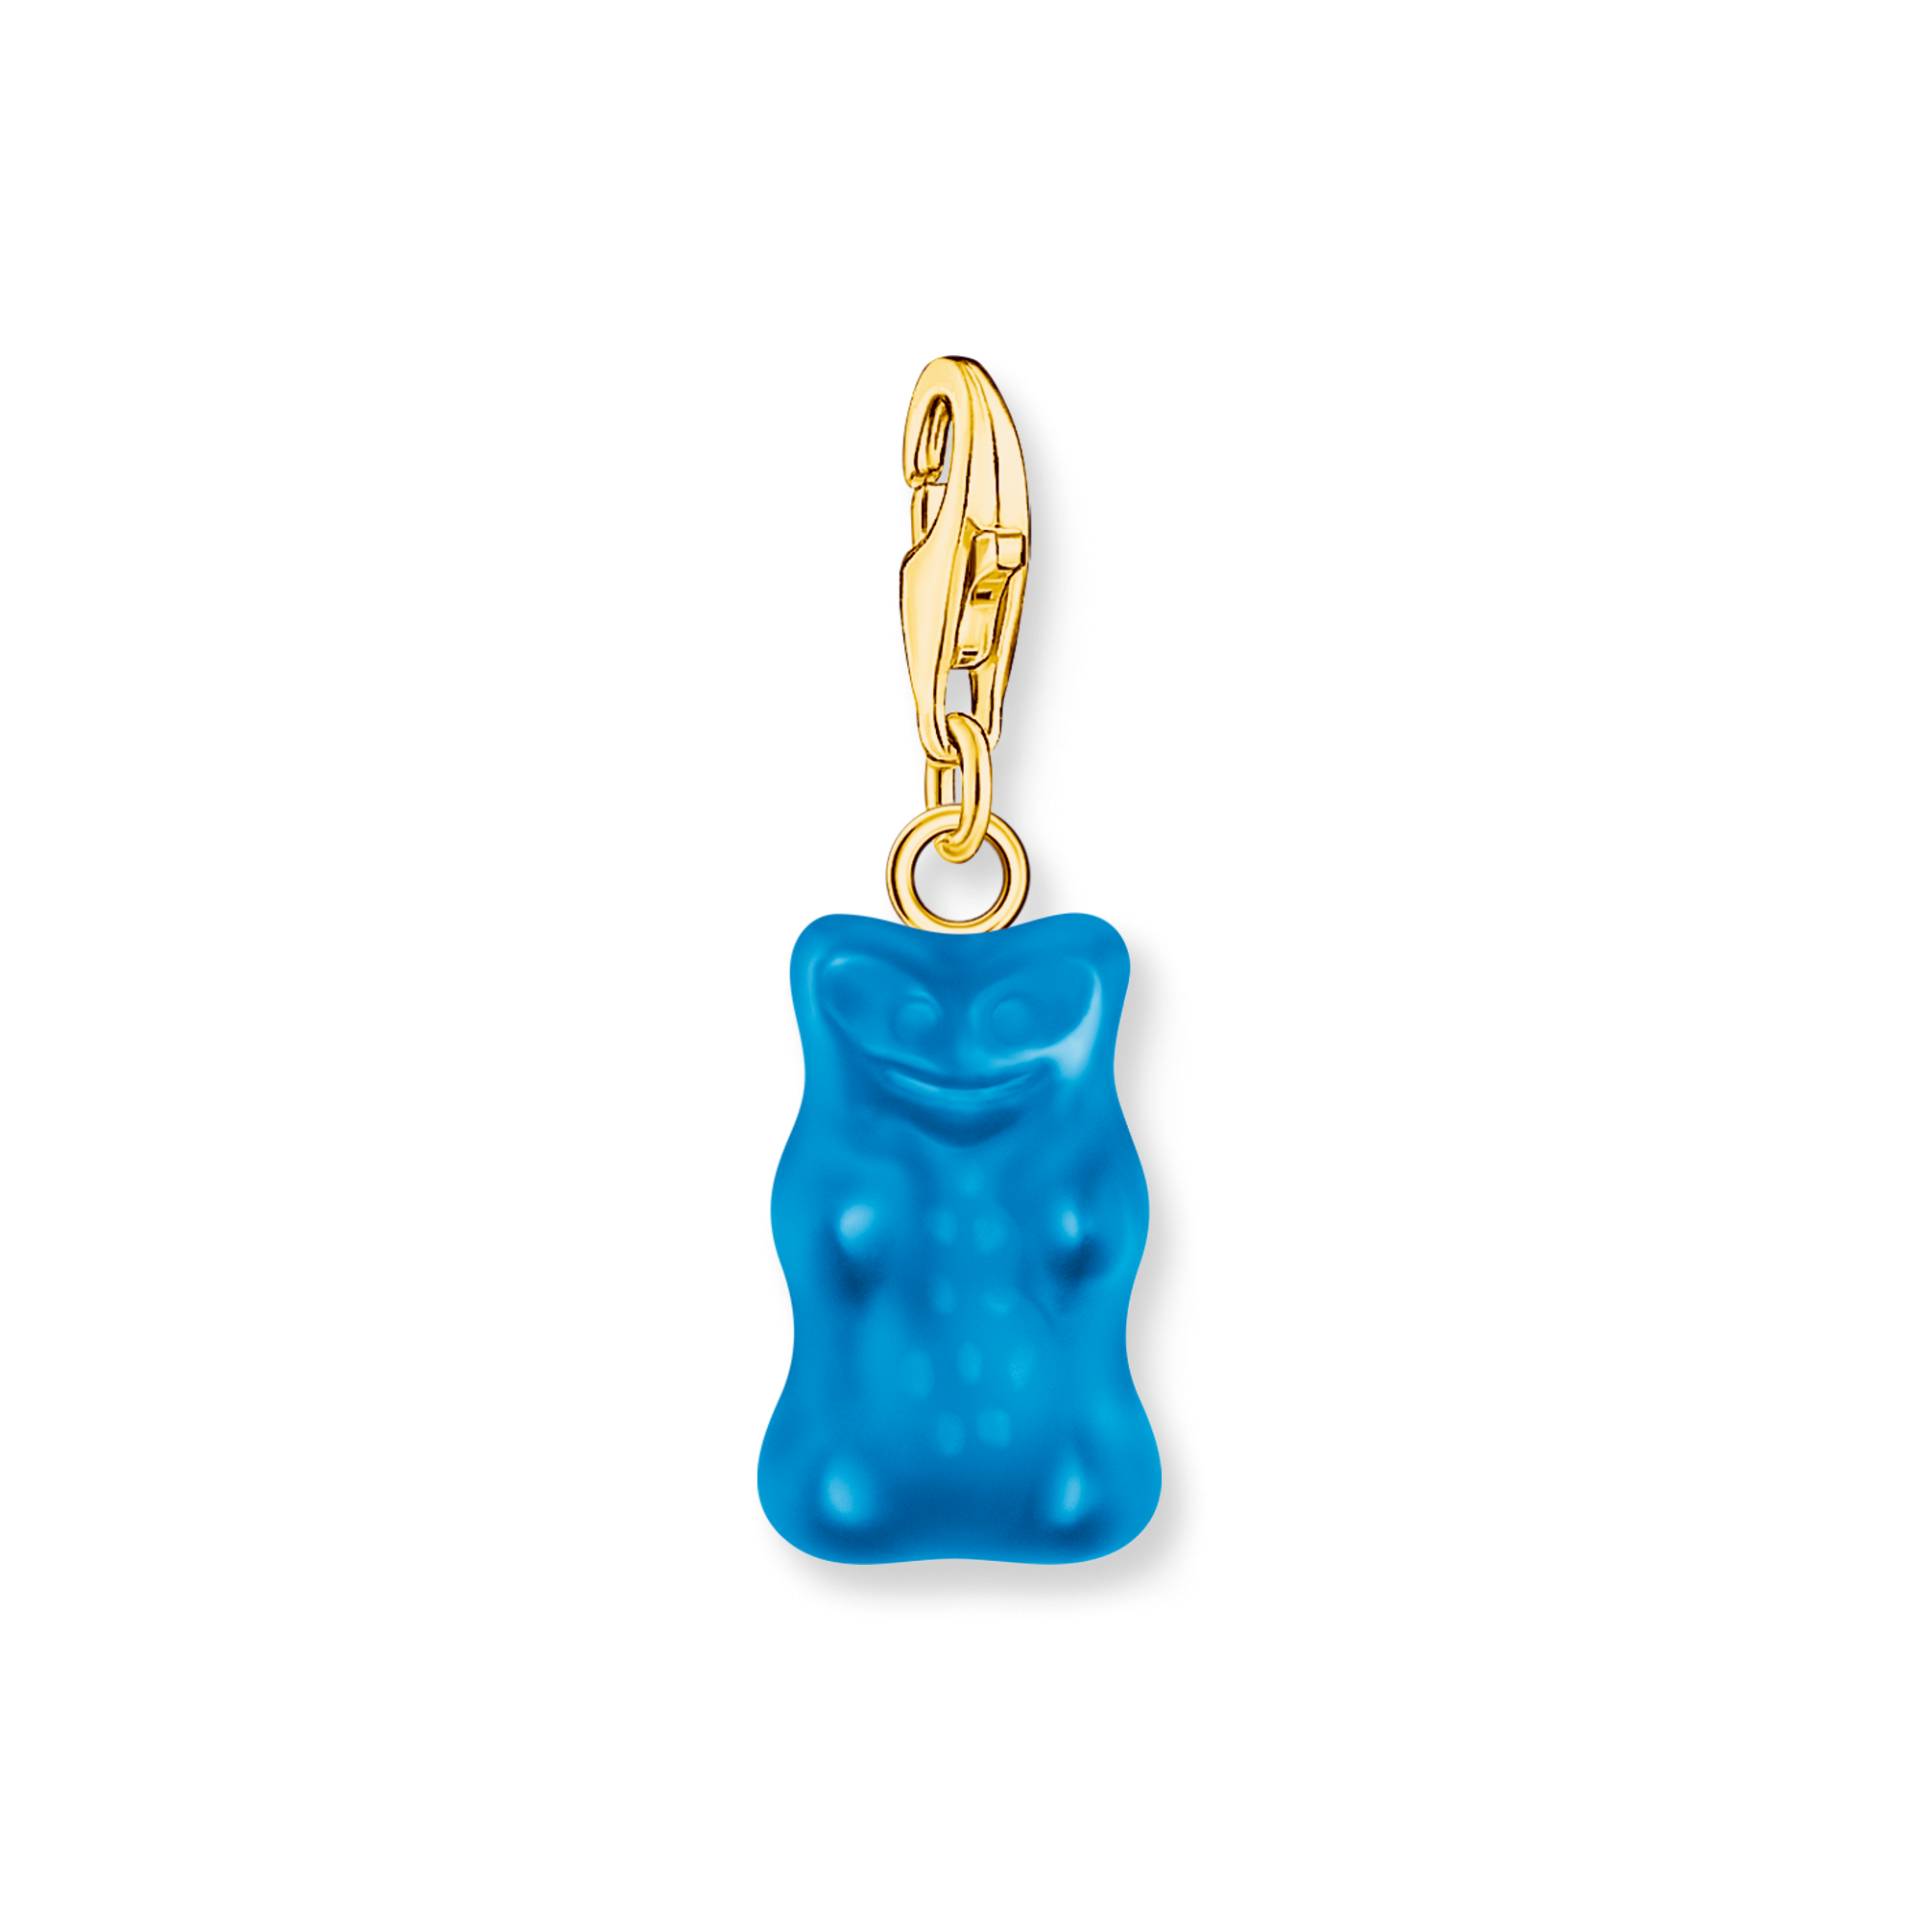 Thomas Sabo Charm-Goldbären-Anhänger in Blau vergoldet blau 2182-413-1 von Thomas Sabo